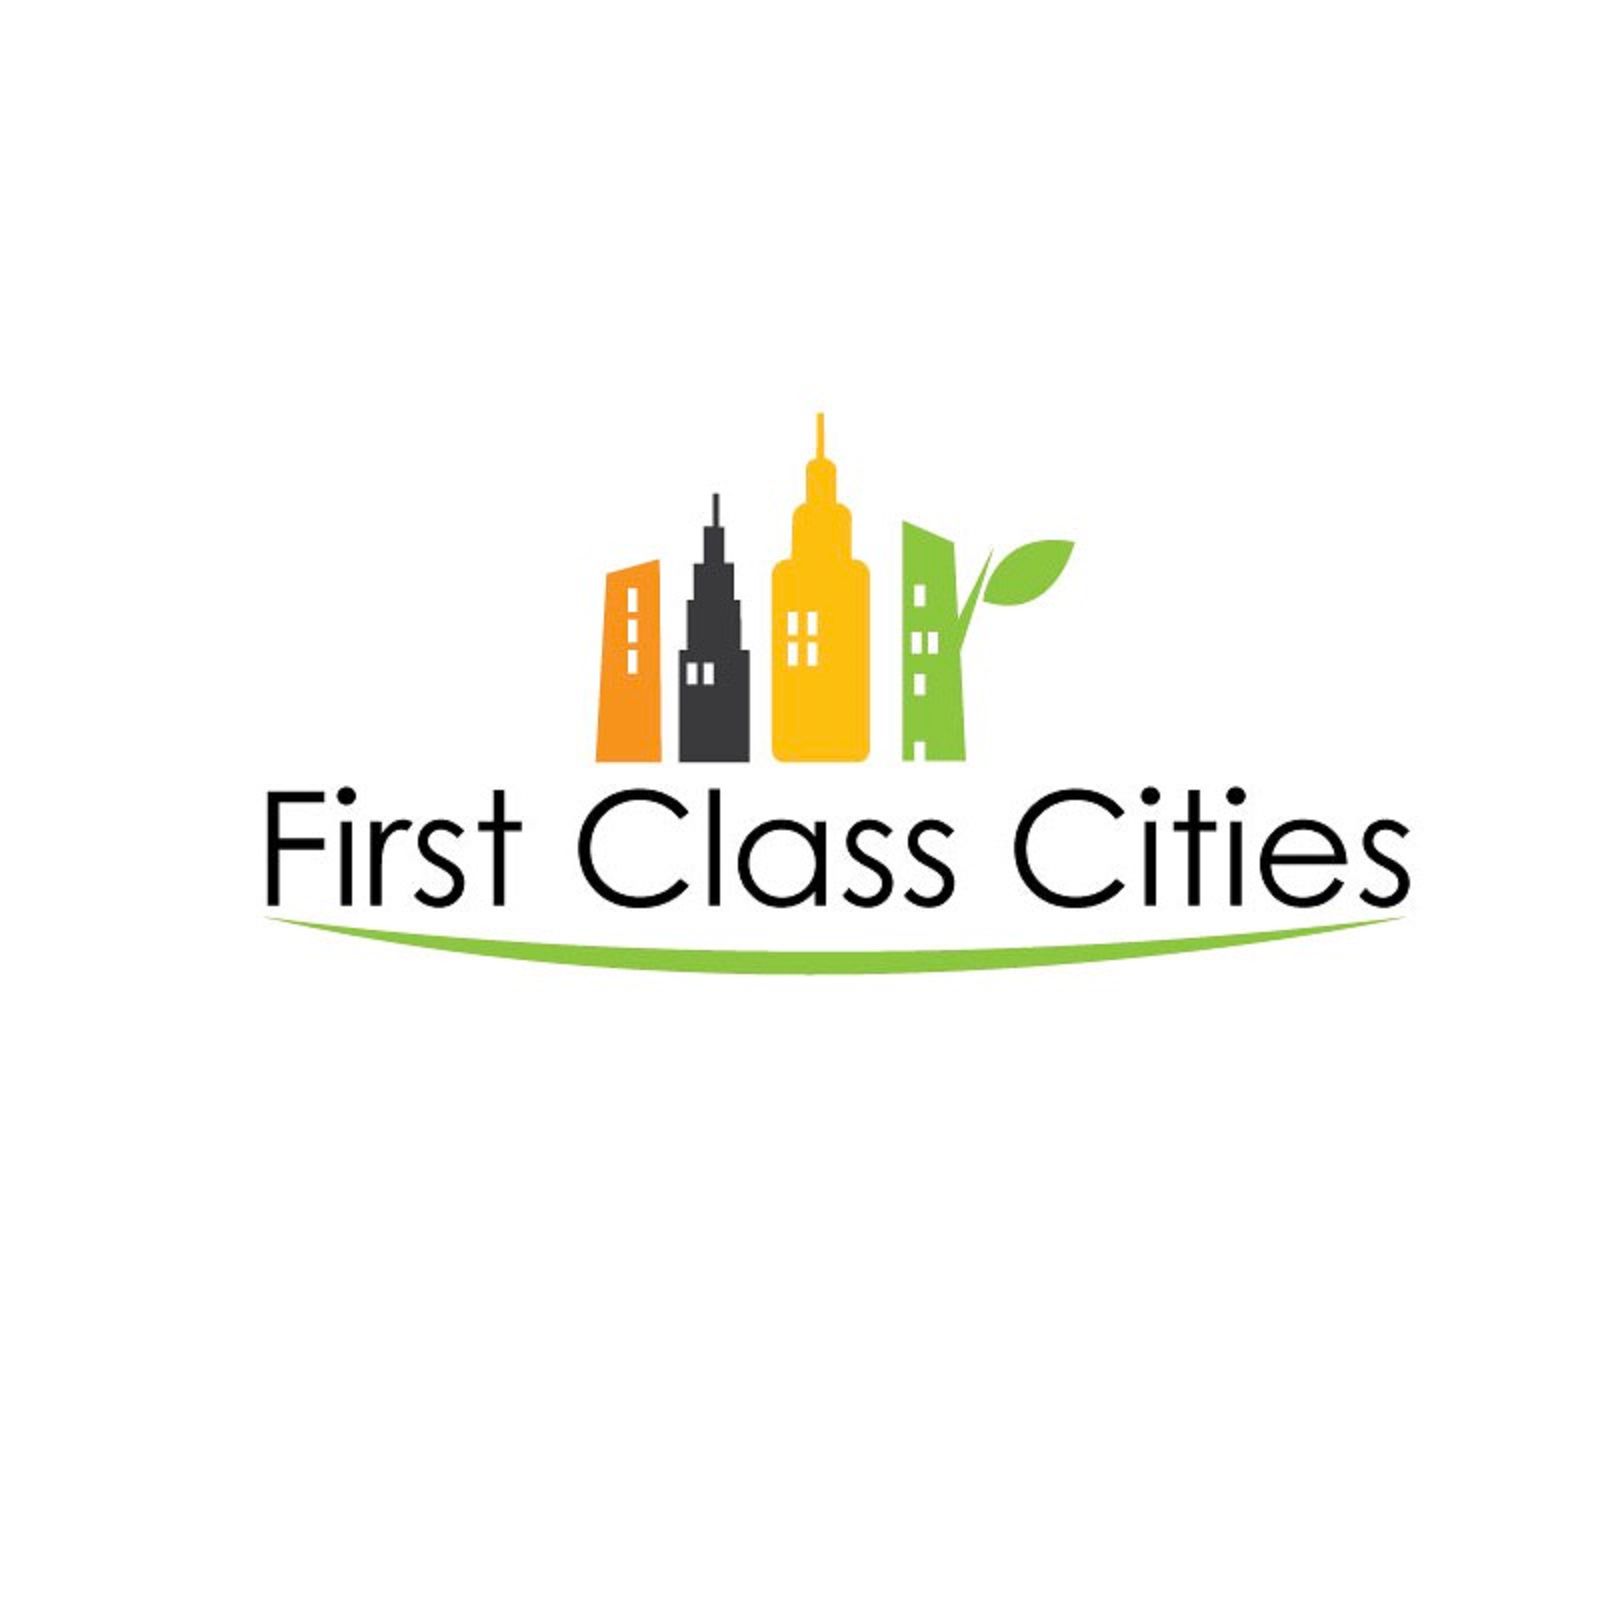 First Class Cities